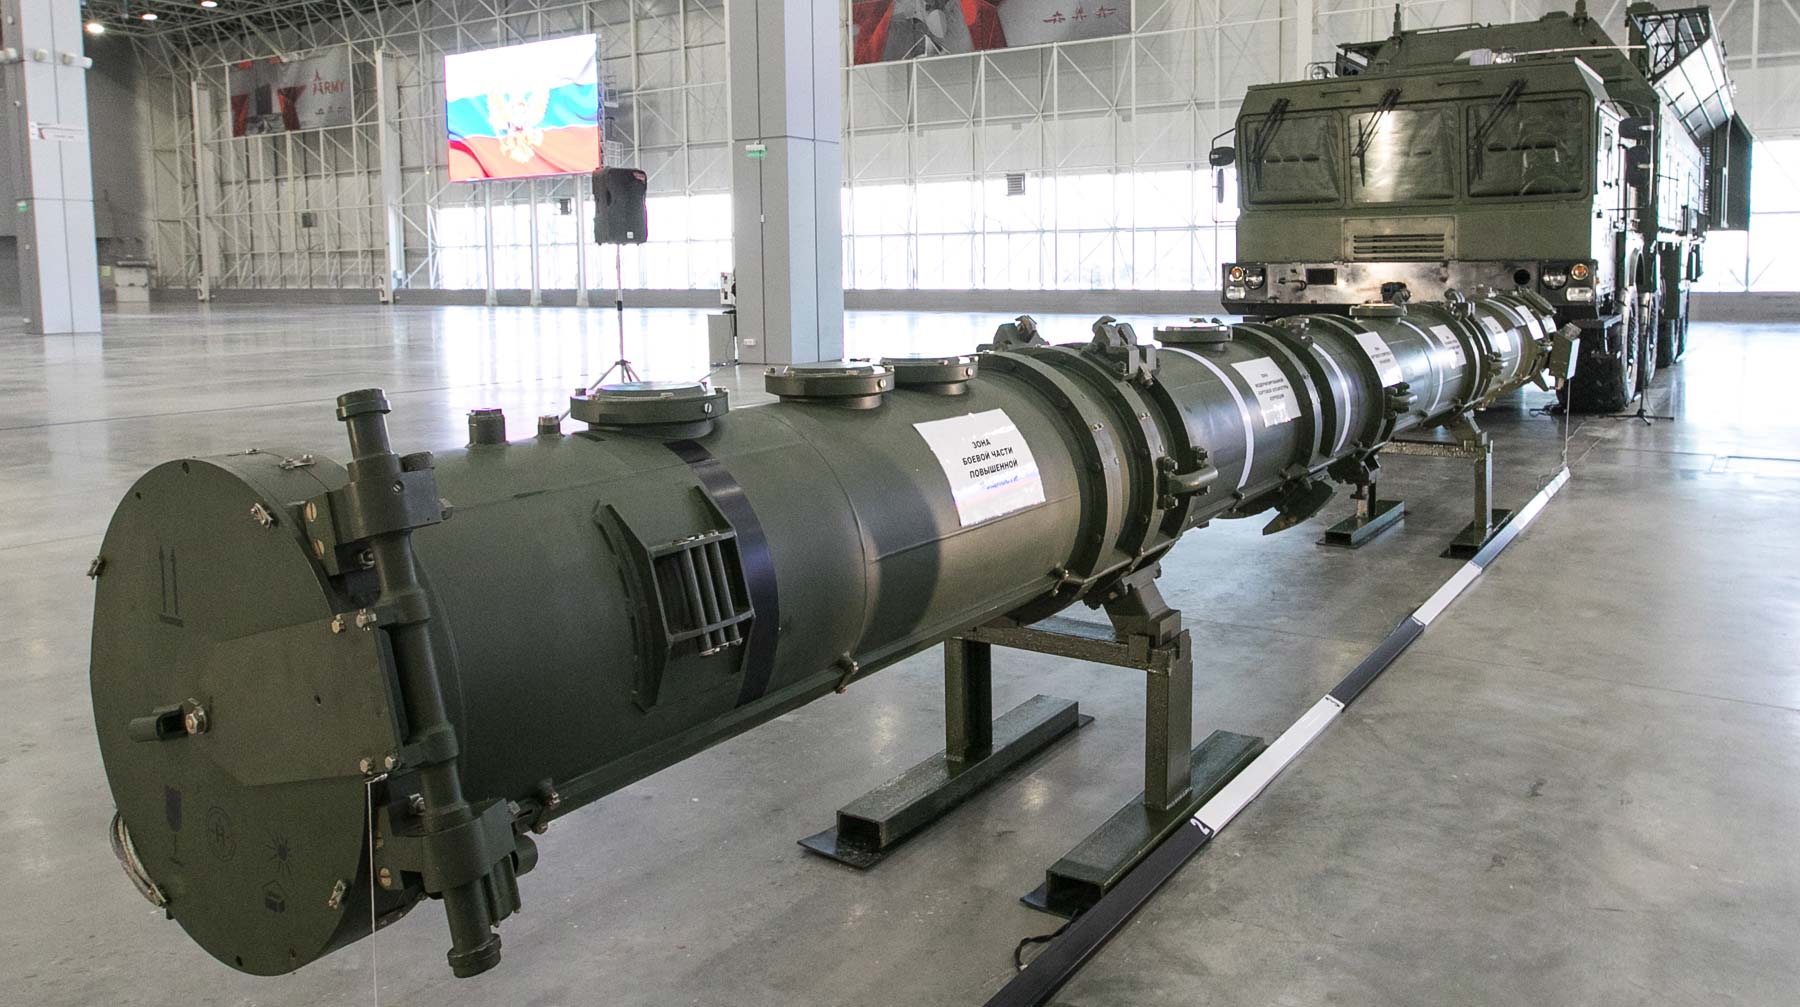 РФ будет готовиться к потенциальному развертыванию США новых ракет средней дальности, отметили в ведомстве Ракетный контейнер 9М729